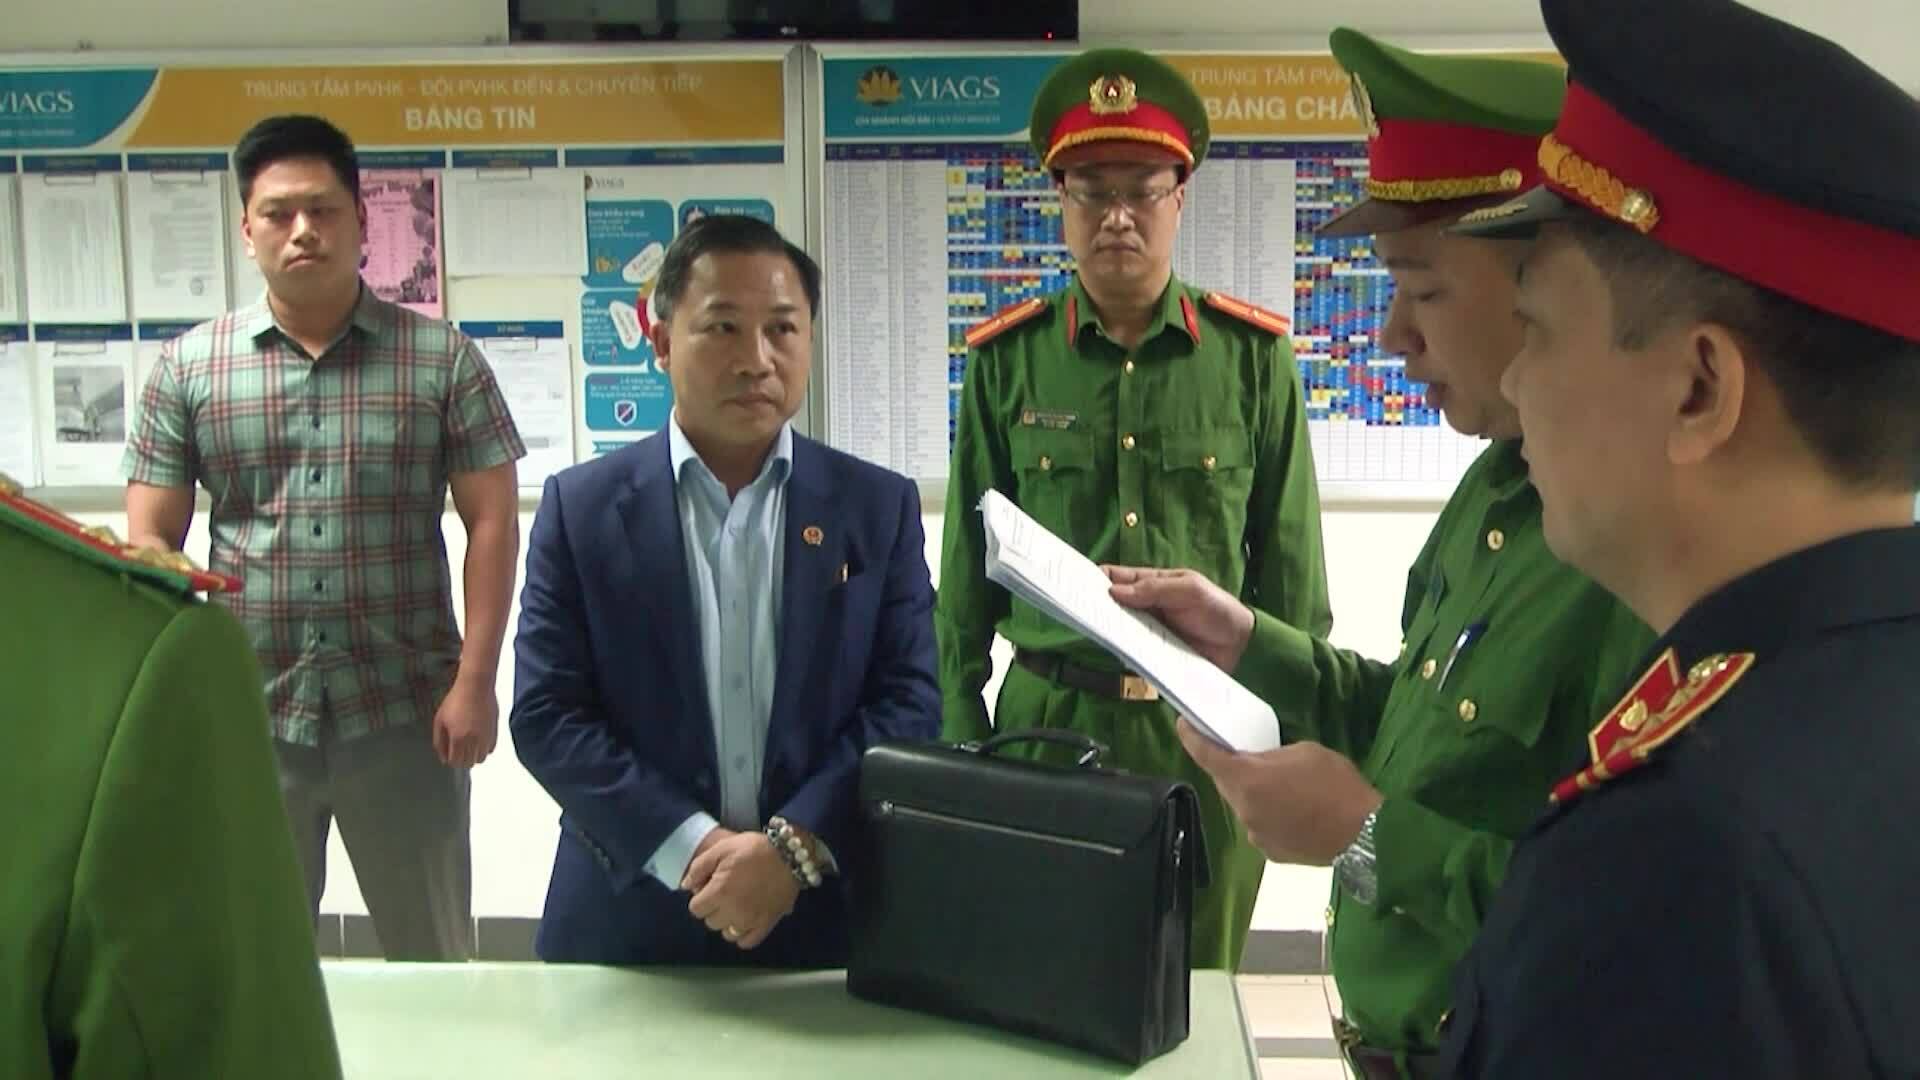 Ông Lưu Bình Nhưỡng bị bắt: Viện trưởng Viện KSND tỉnh Thái Bình nói tình tiết chưa từng công bố  - Ảnh 1.